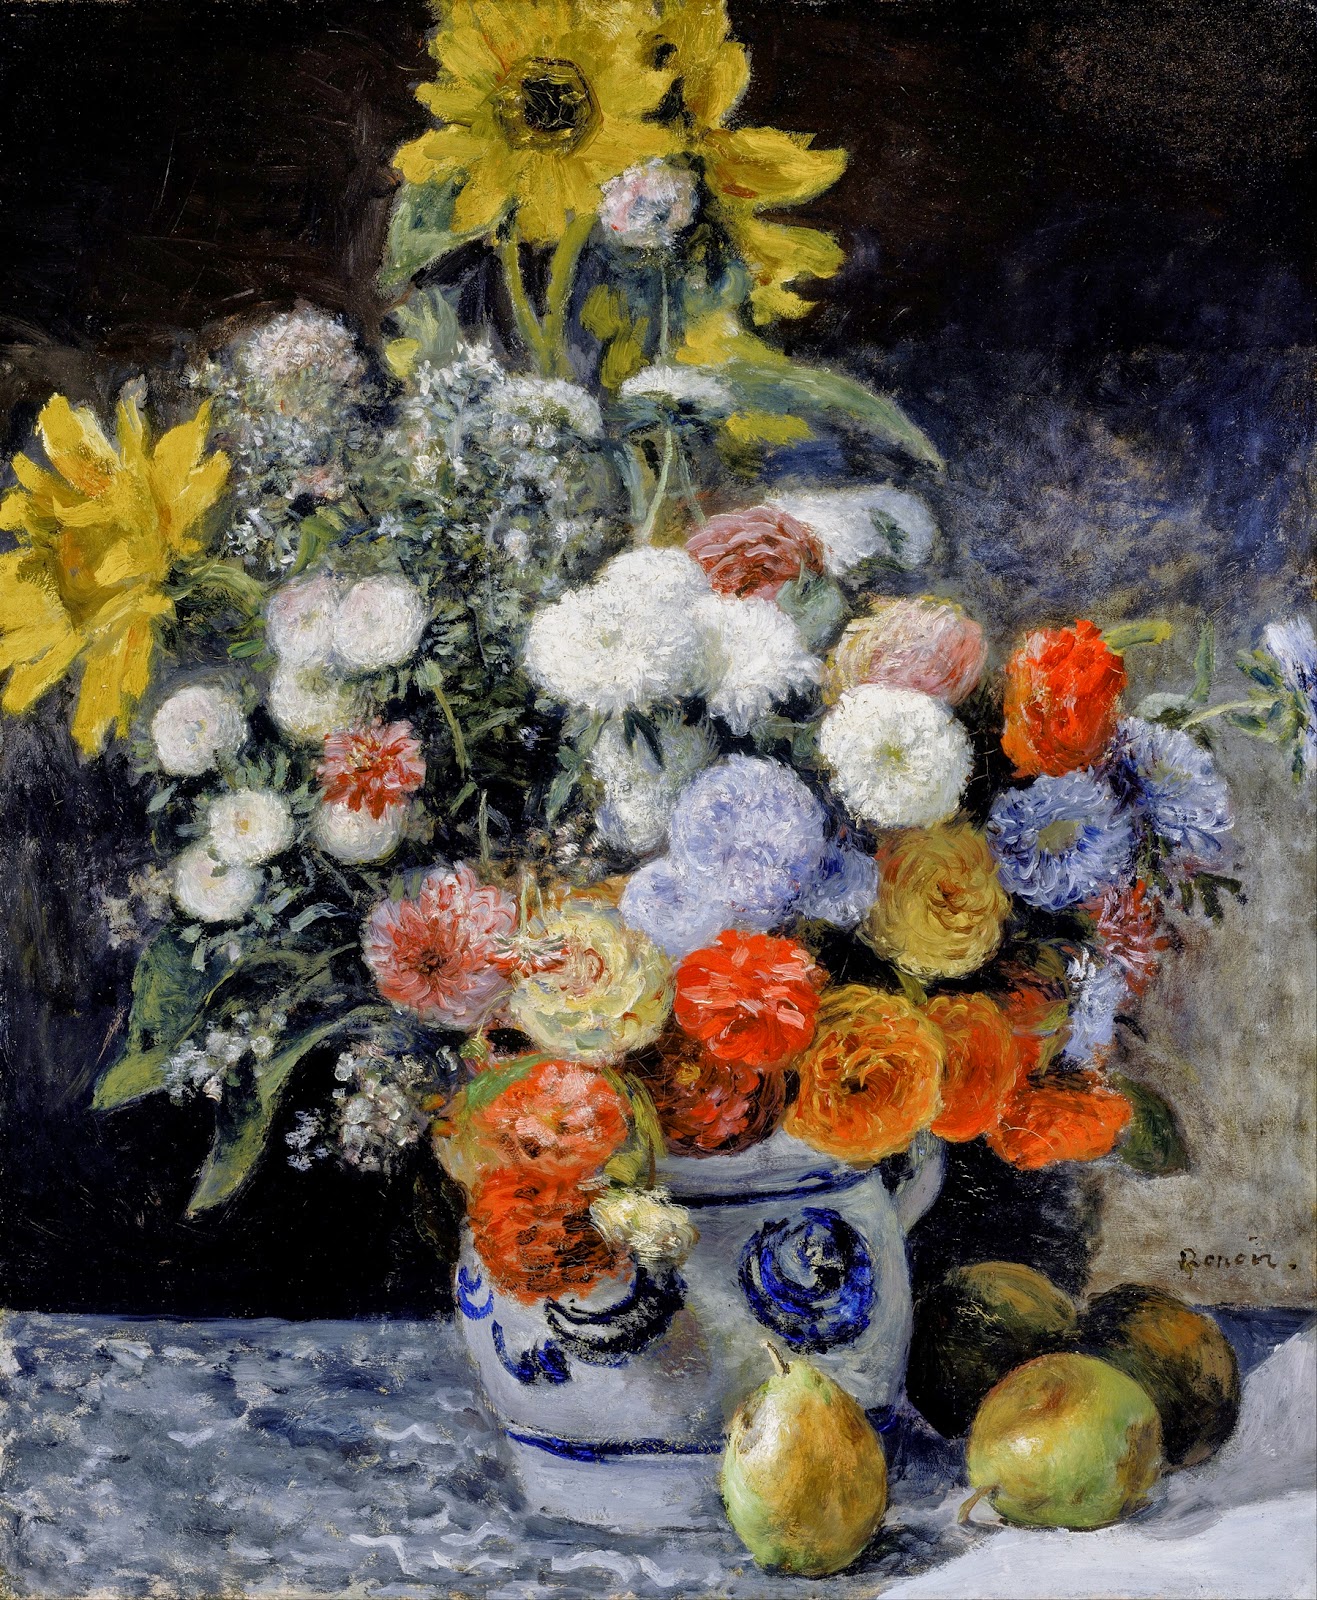 Pierre+Auguste+Renoir-1841-1-19 (287).jpg